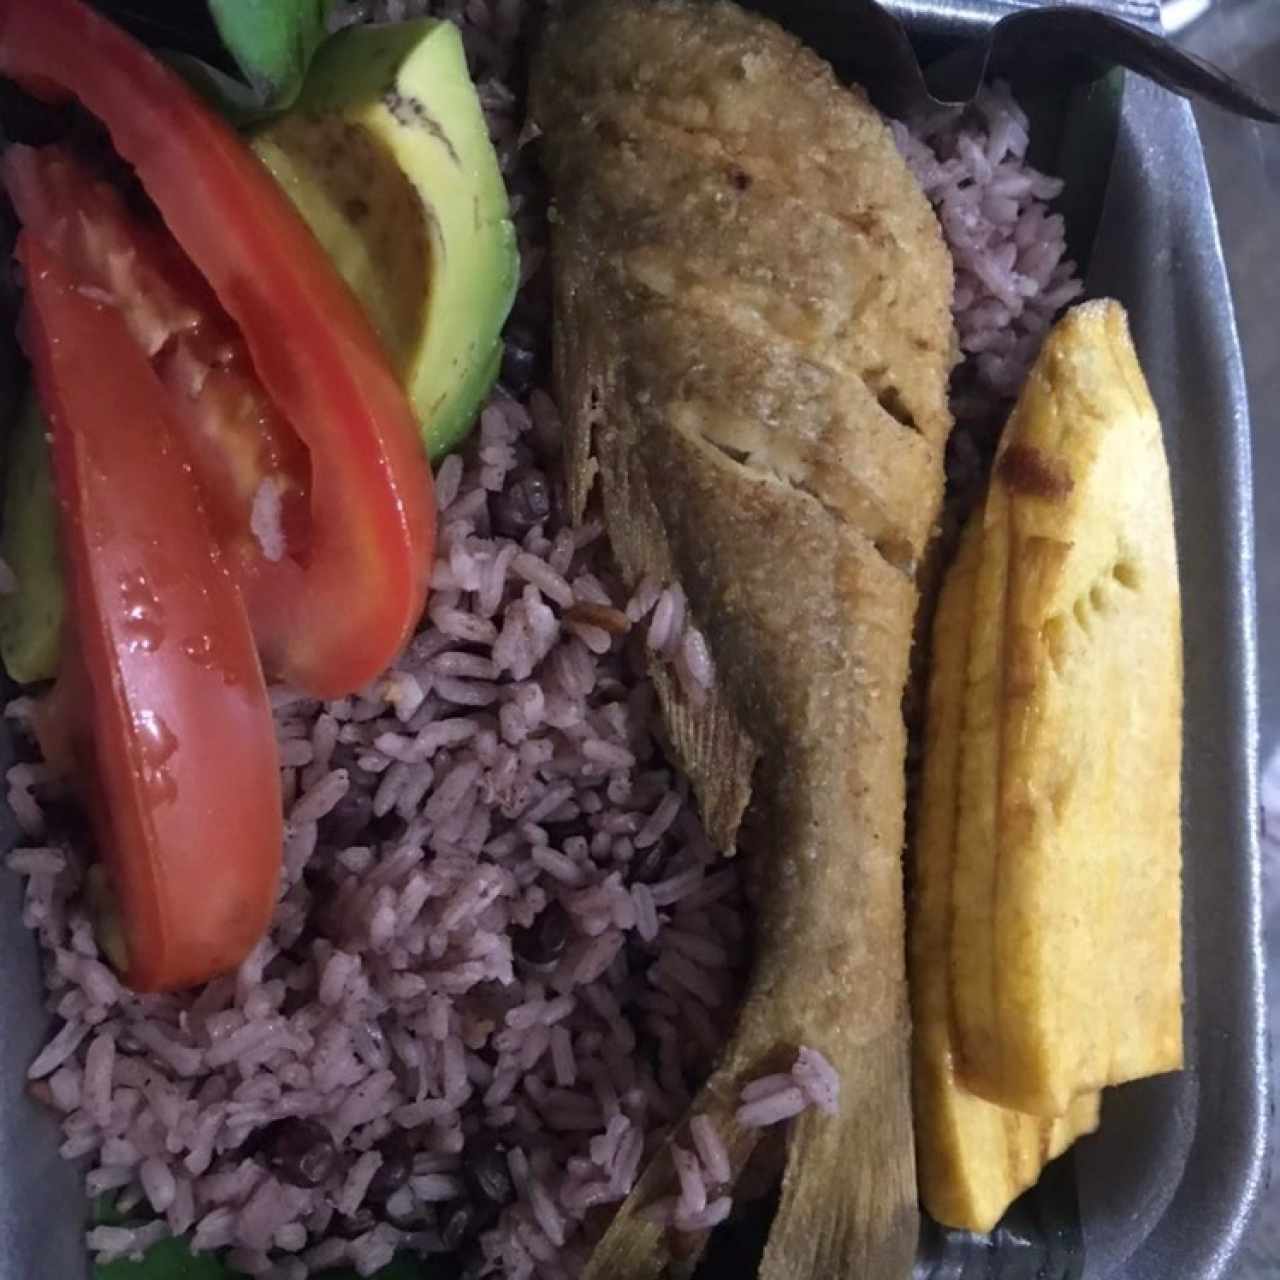 pescado frito, arroz con guandú y coco